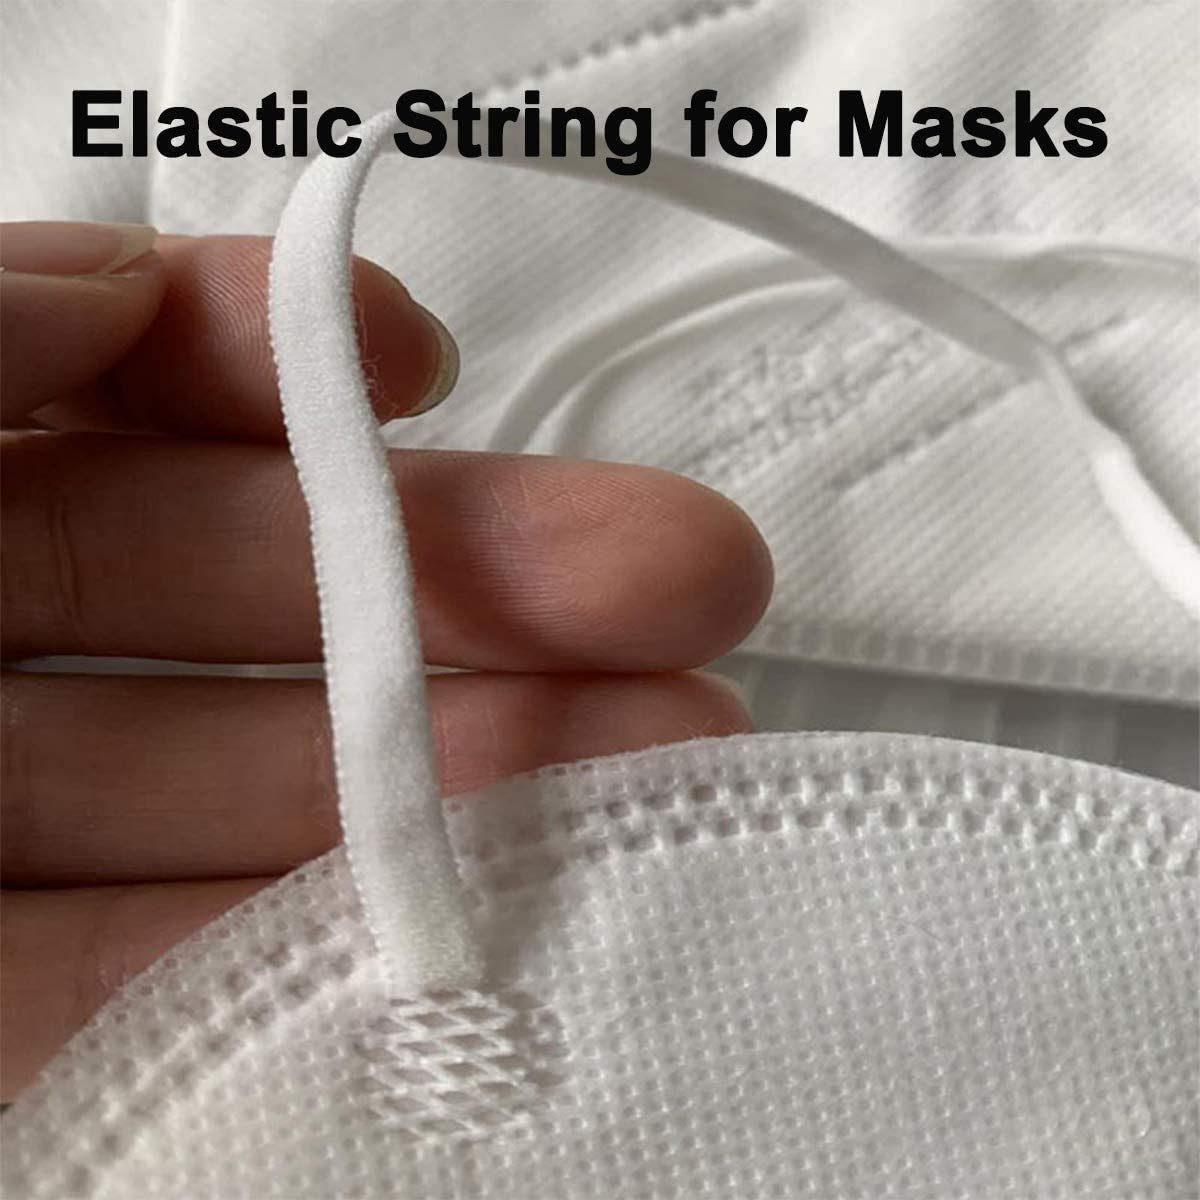 Flat Ear Loop / Elastic Earloop for Face Mask